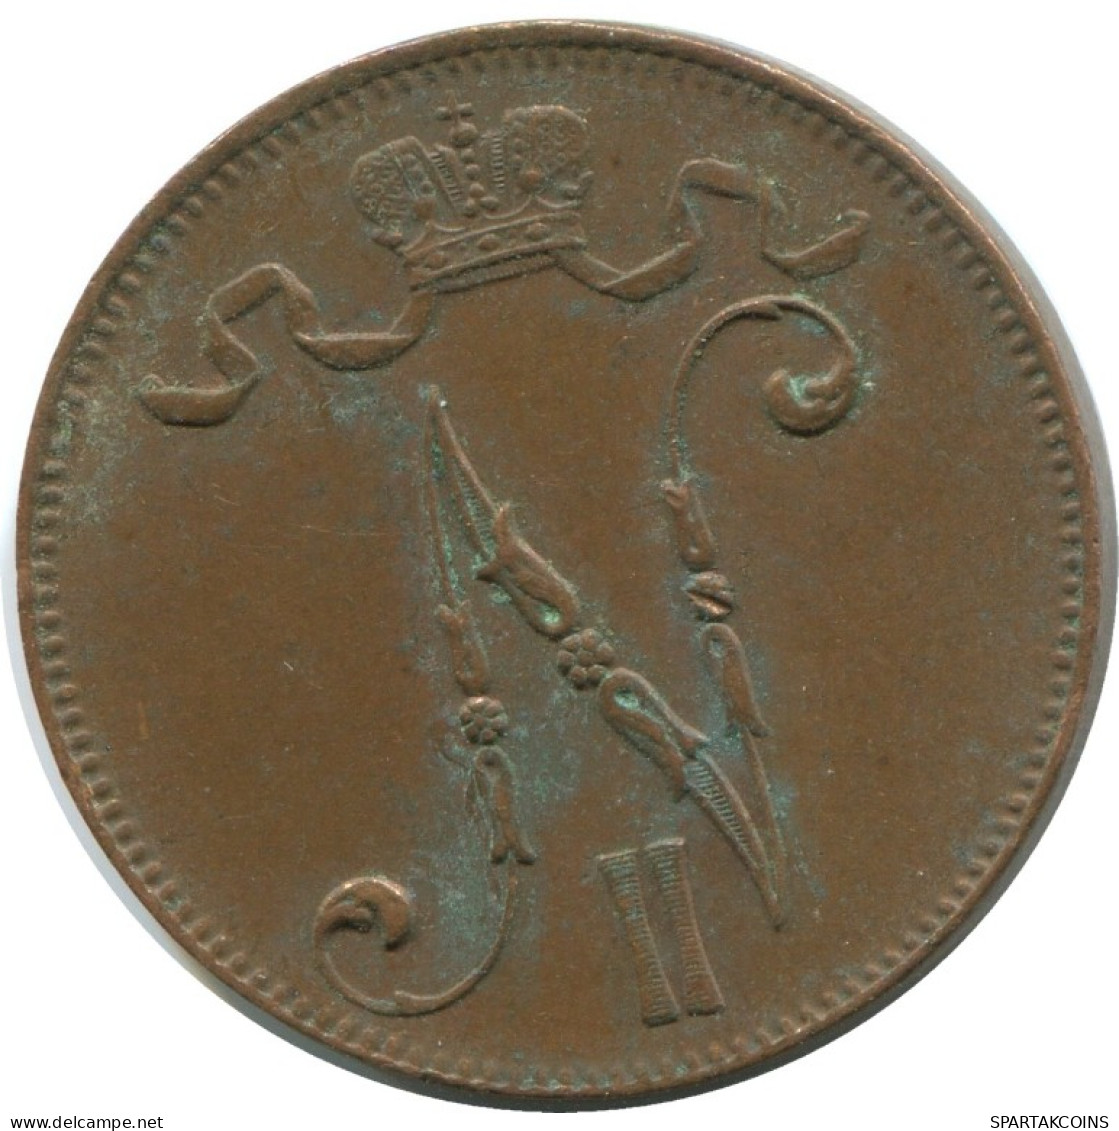 5 PENNIA 1916 FINLAND Coin RUSSIA EMPIRE #AB178.5.U.A - Finlande